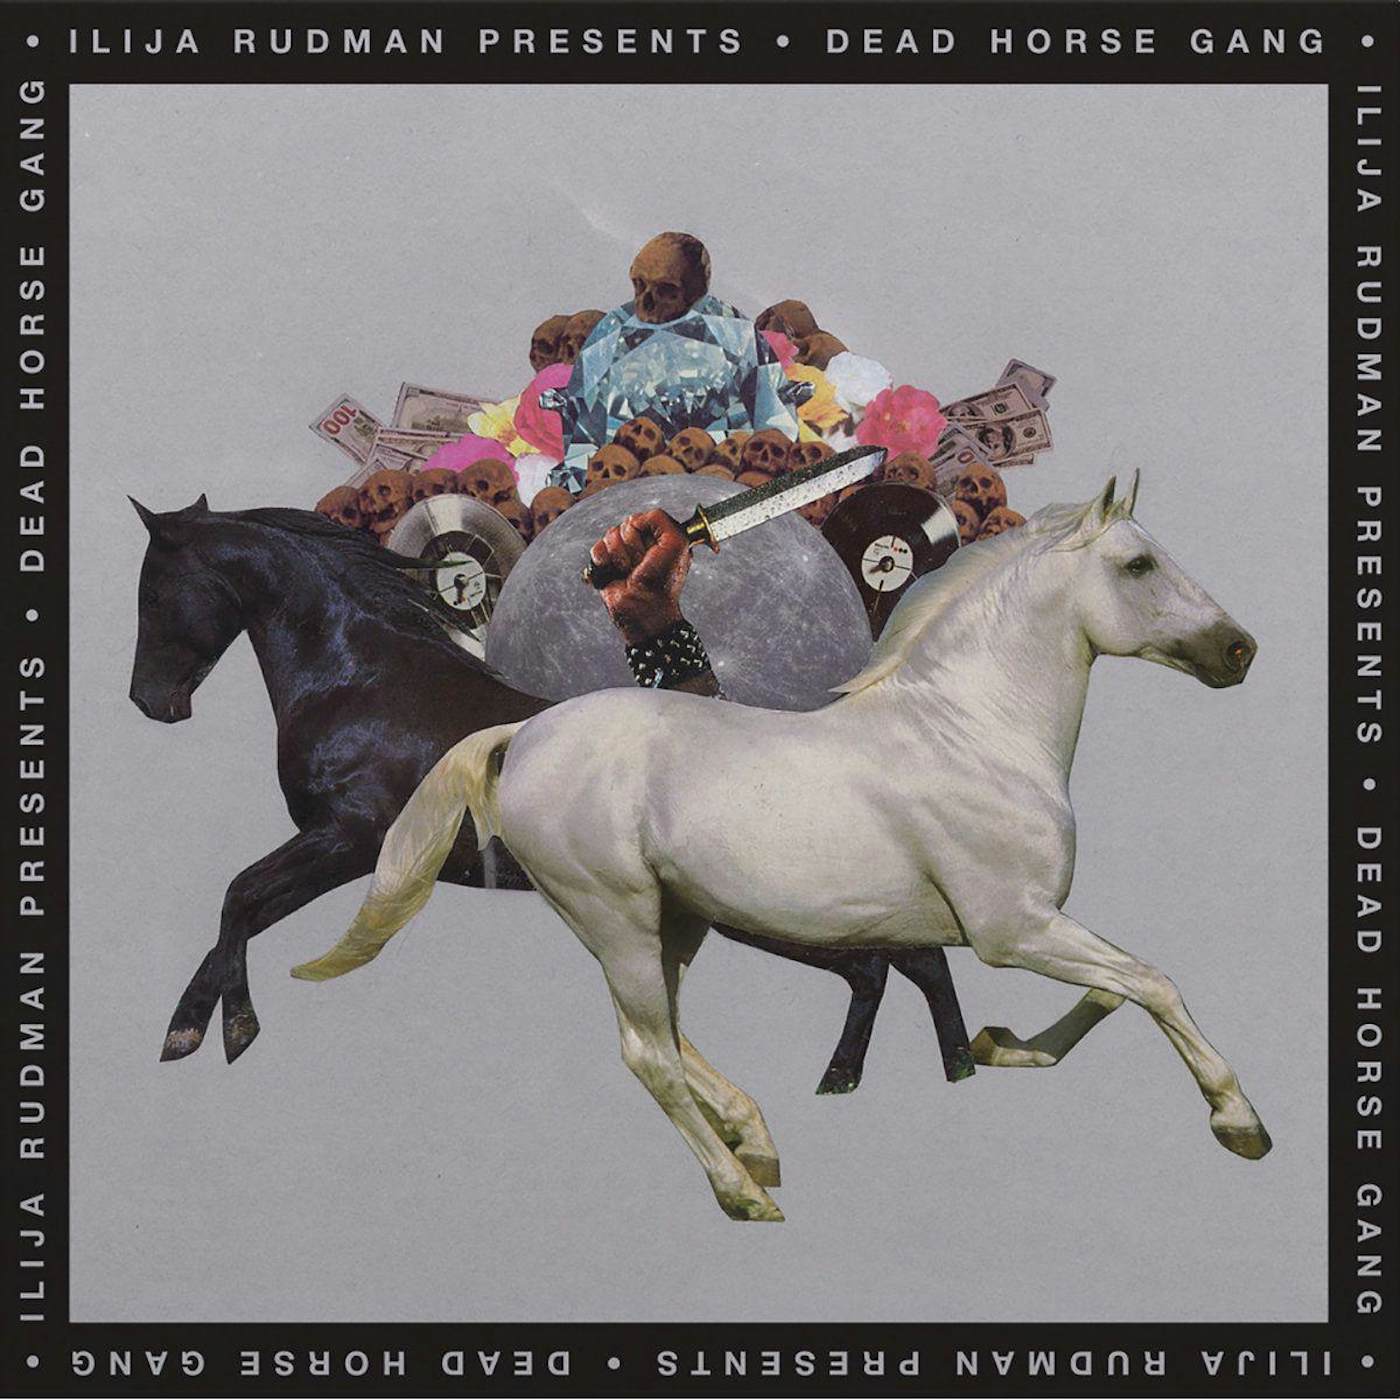 ILIJA RUDMAN PRESENTS: DEAD HORSE GANG Vinyl Record